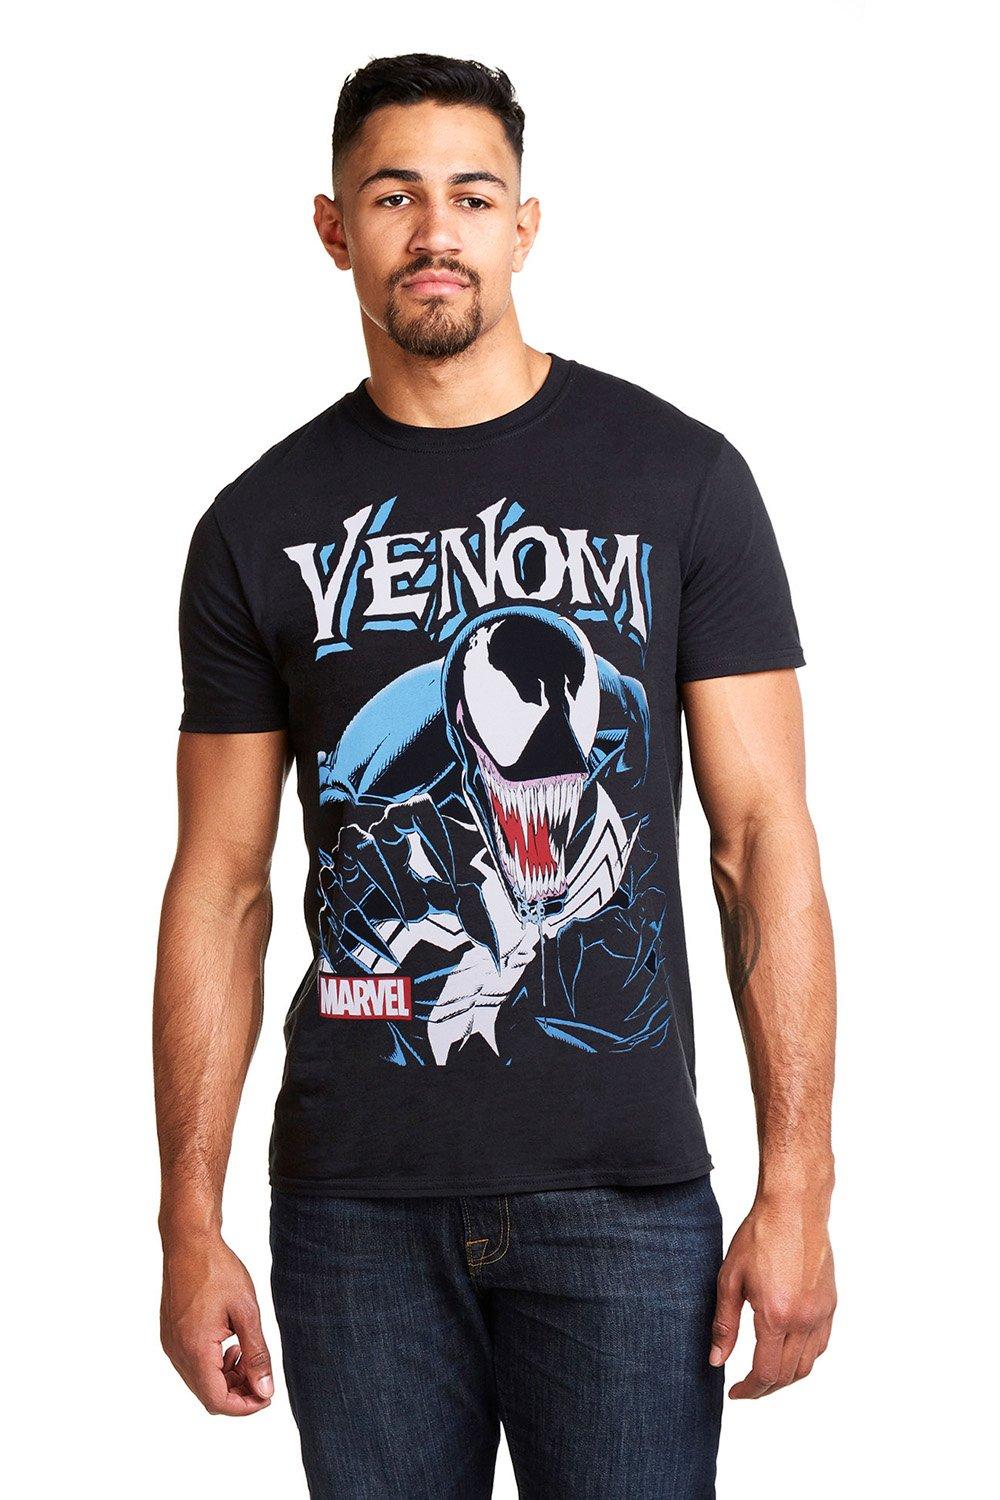 Хлопковая футболка Venom Antihero Marvel, черный